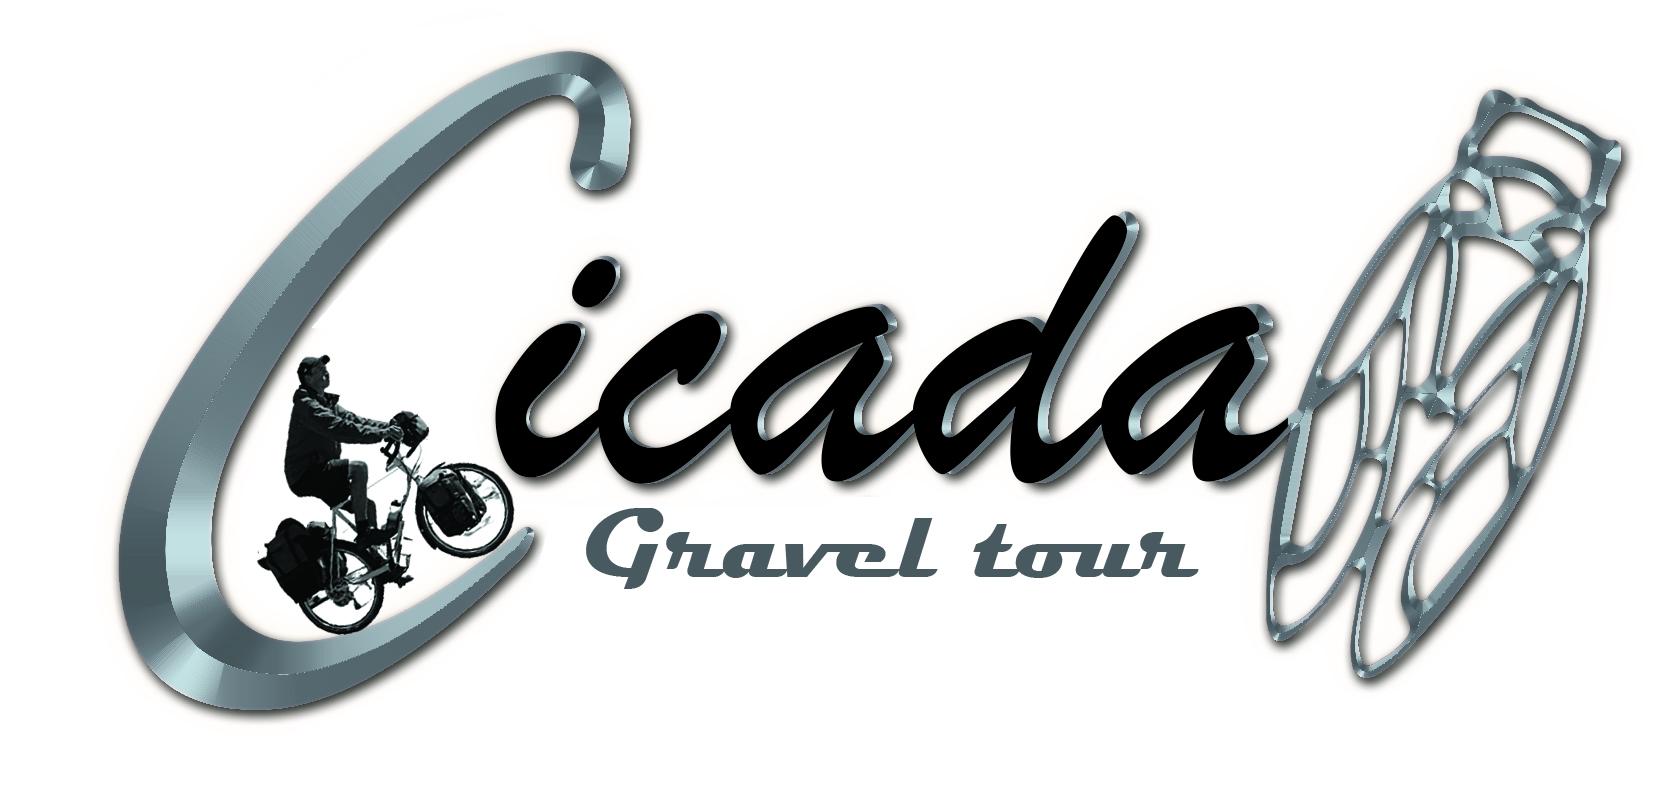 Cicada Gravel tour